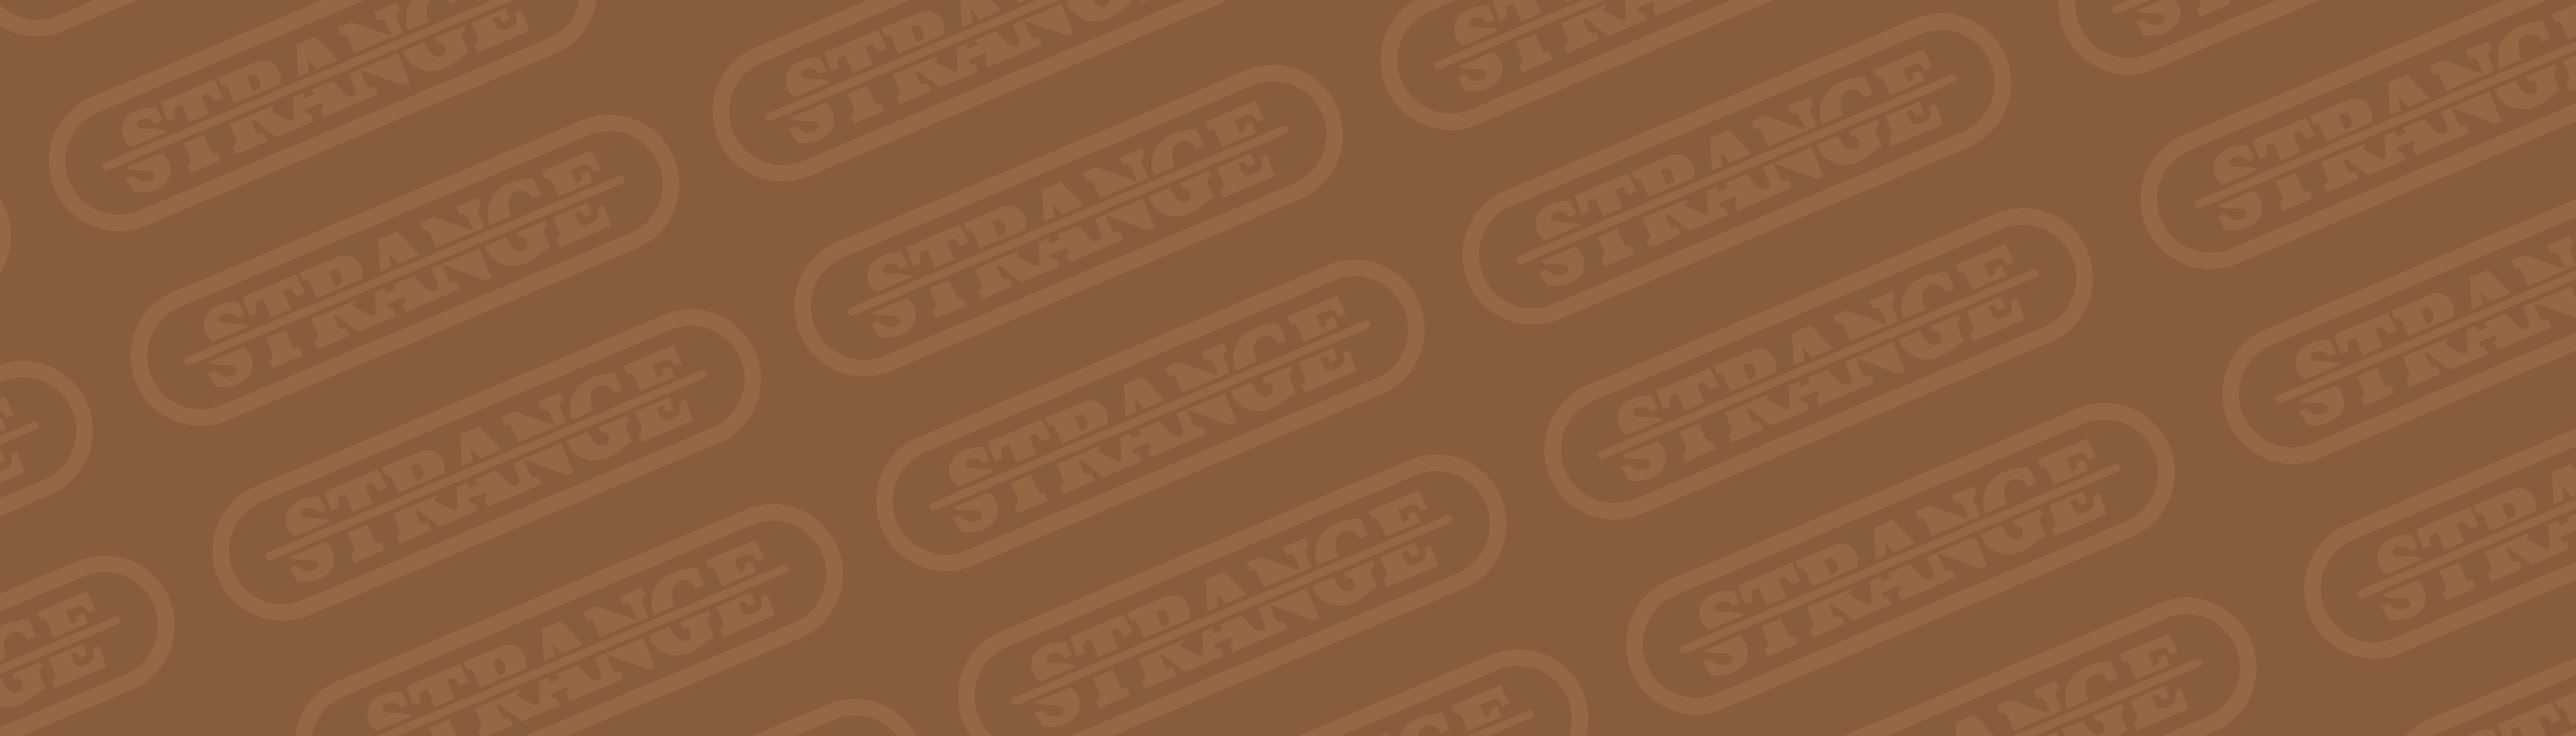 StrangeVault banner